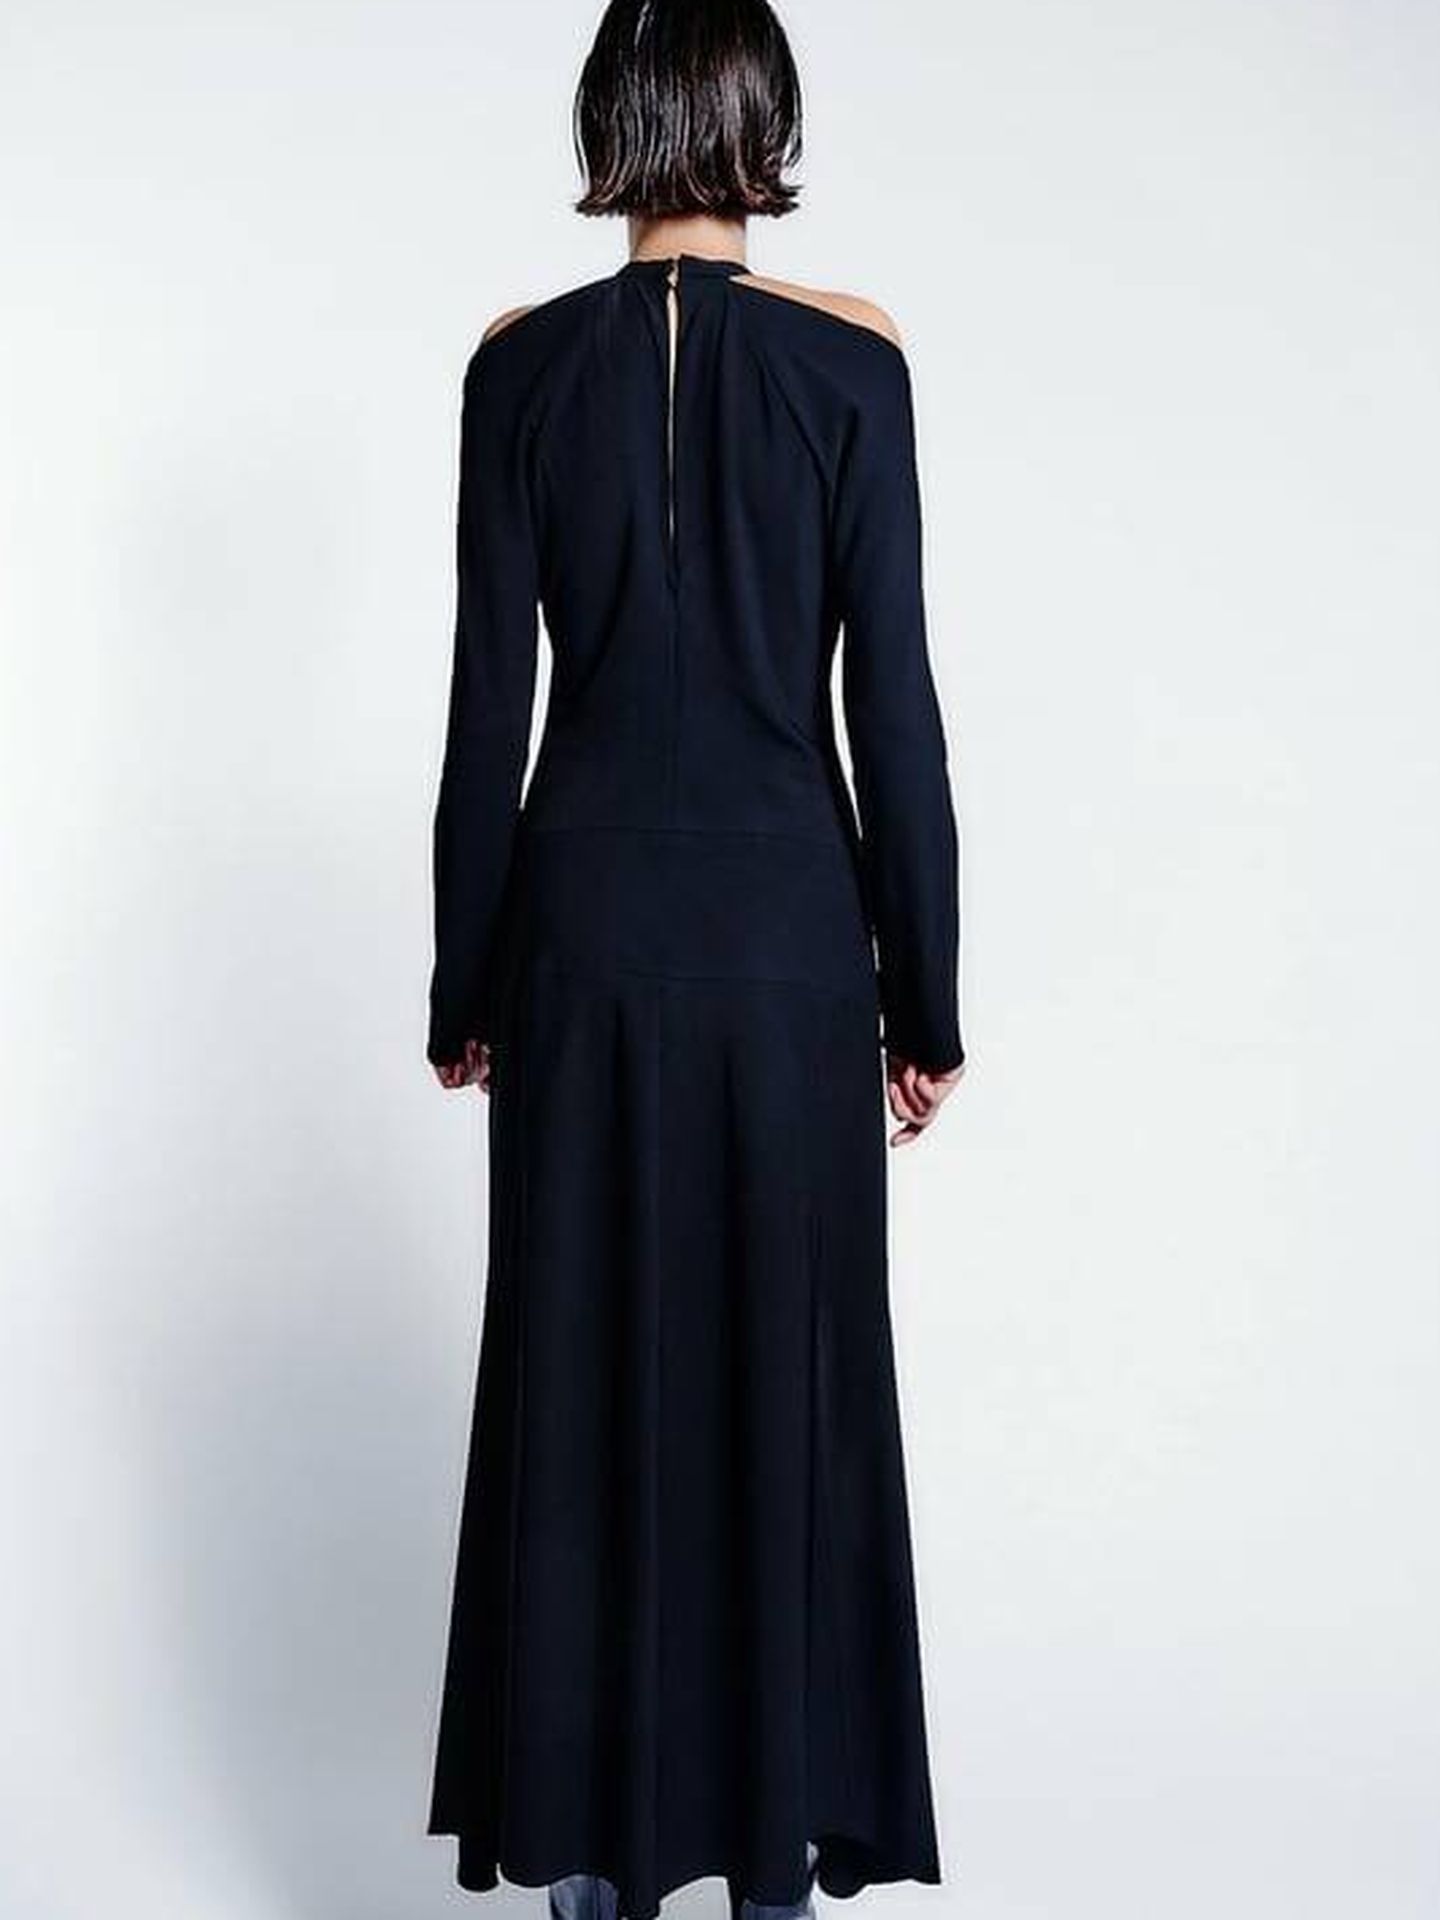 3 vestidos de las novedades de Zara para seguir las tendencias. (Cortesía)